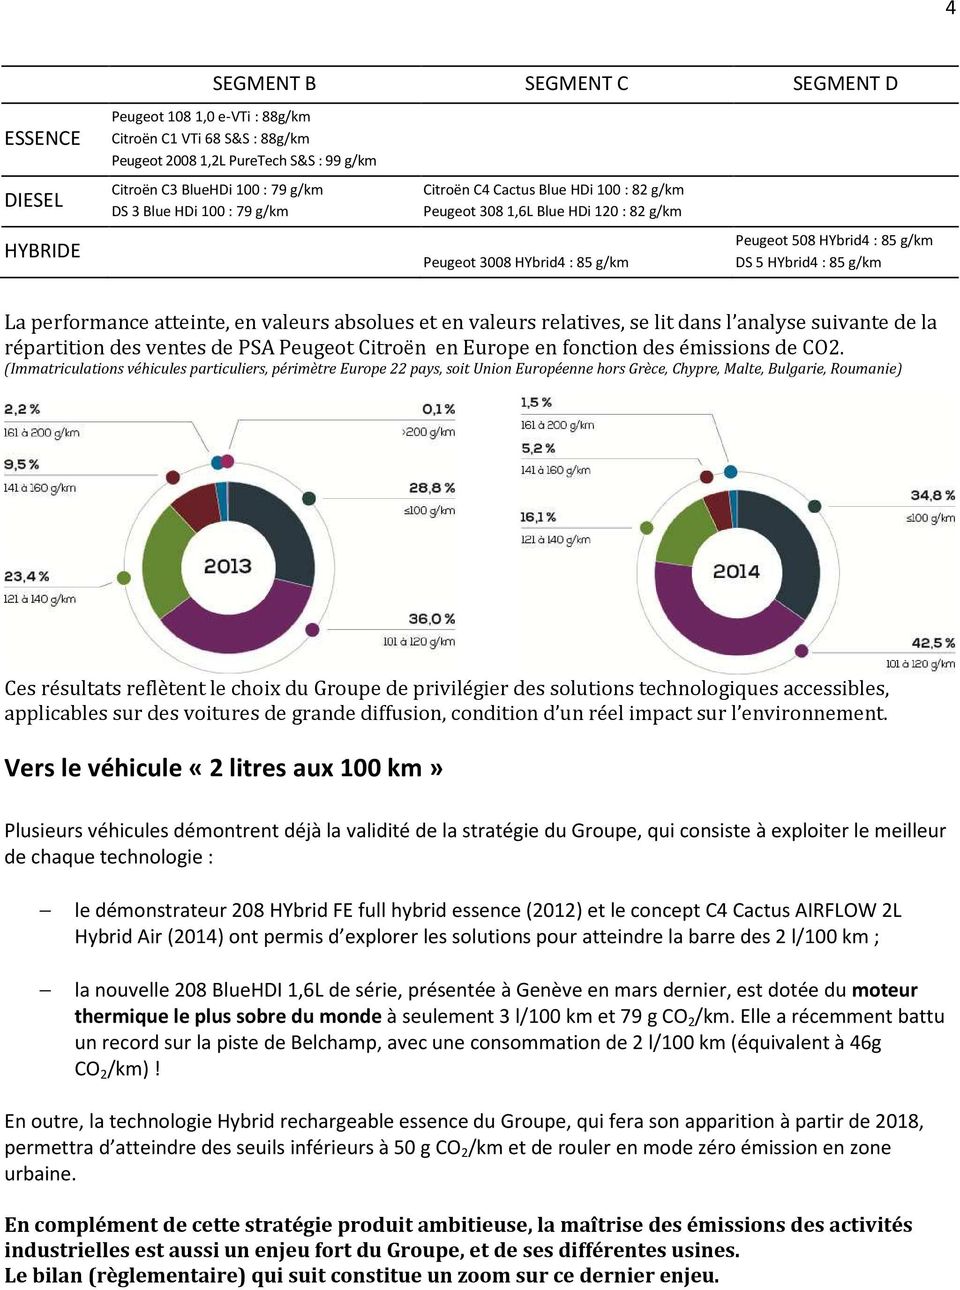 performance atteinte, en valeurs absolues et en valeurs relatives, se lit dans l analyse suivante de la répartition des ventes de PSA Peugeot Citroën en Europe en fonction des émissions de CO2.